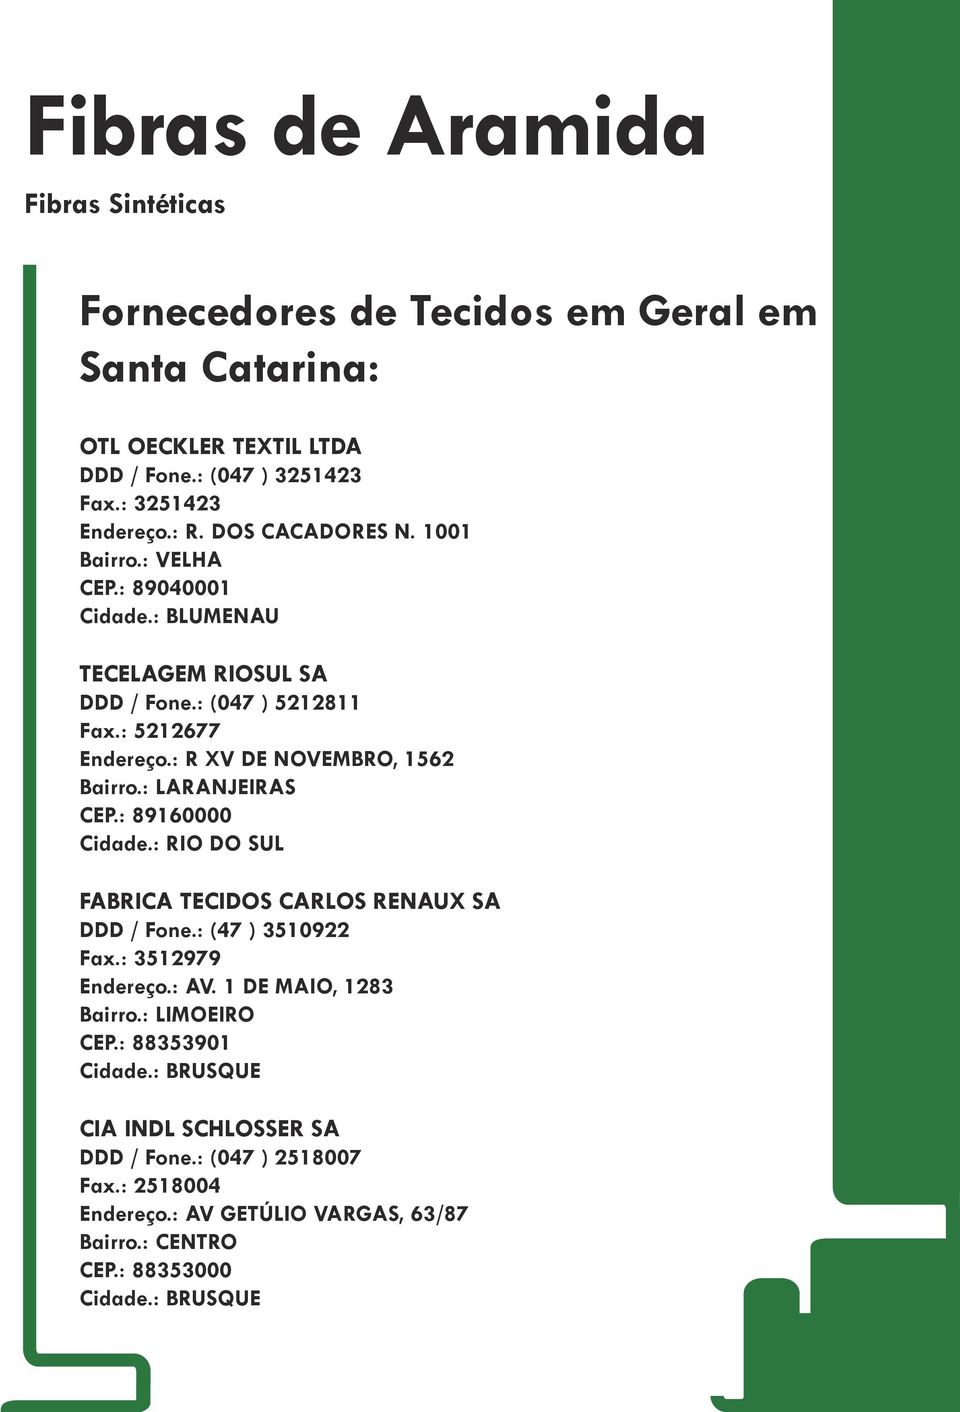 : 89160000 Cidade.: RIO DO SUL FABRICA TECIDOS CARLOS RENAUX SA DDD / Fone.: (47 ) 3510922 Fax.: 3512979 Endereço.: AV. 1 DE MAIO, 1283 Bairro.: LIMOEIRO CEP.